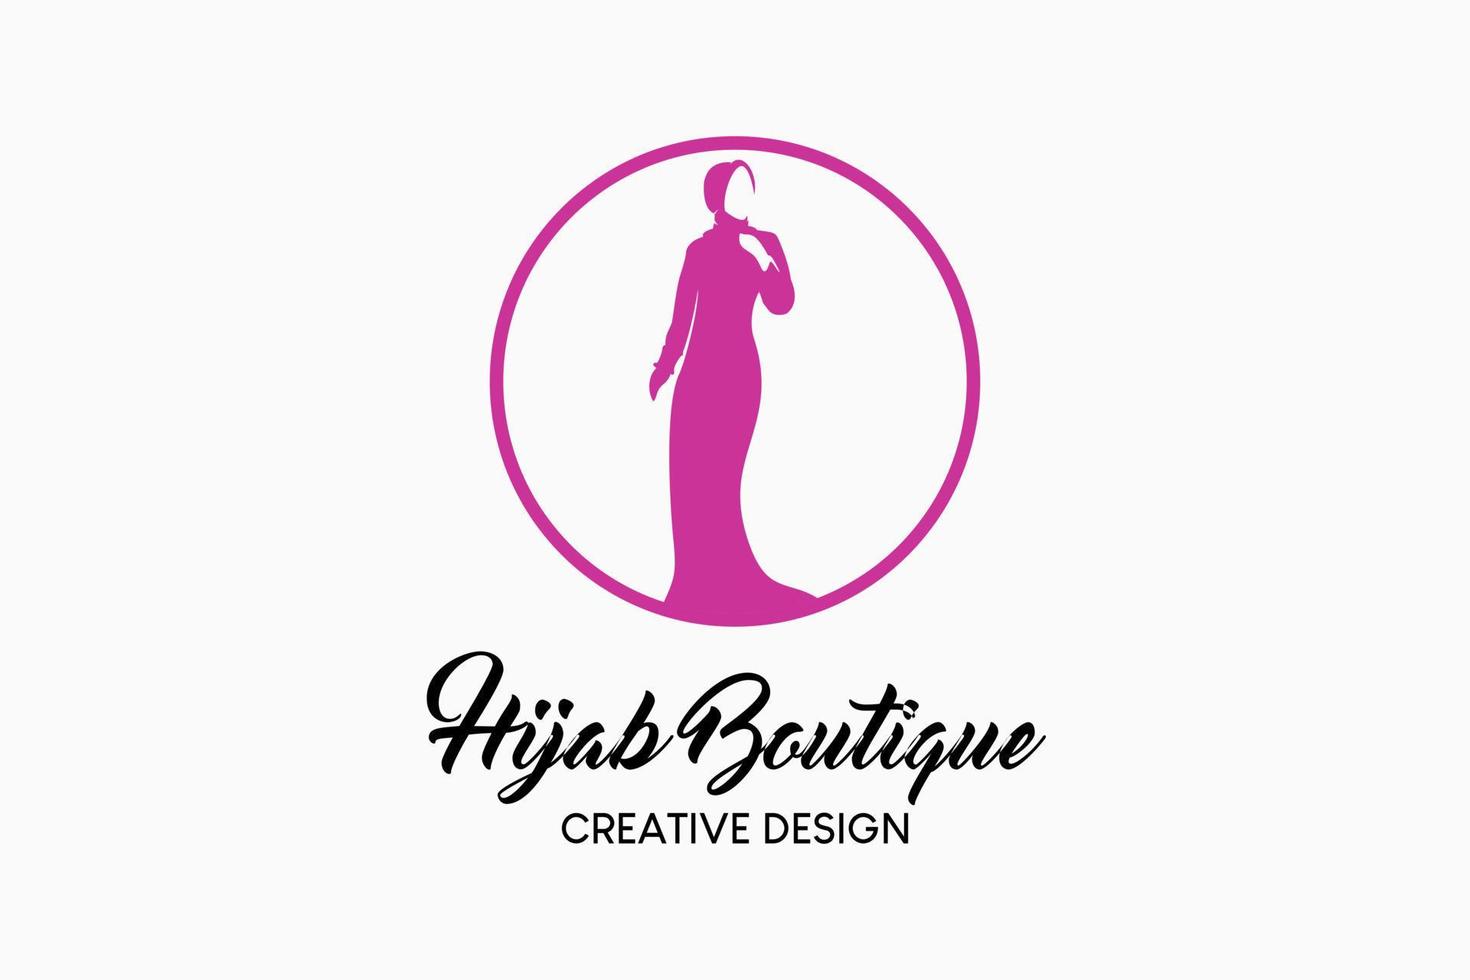 design de logotipo boutique hijab com um conceito criativo e simples de uma silhueta de uma mulher em um círculo. ilustração em vetor logotipo de moda hijab.